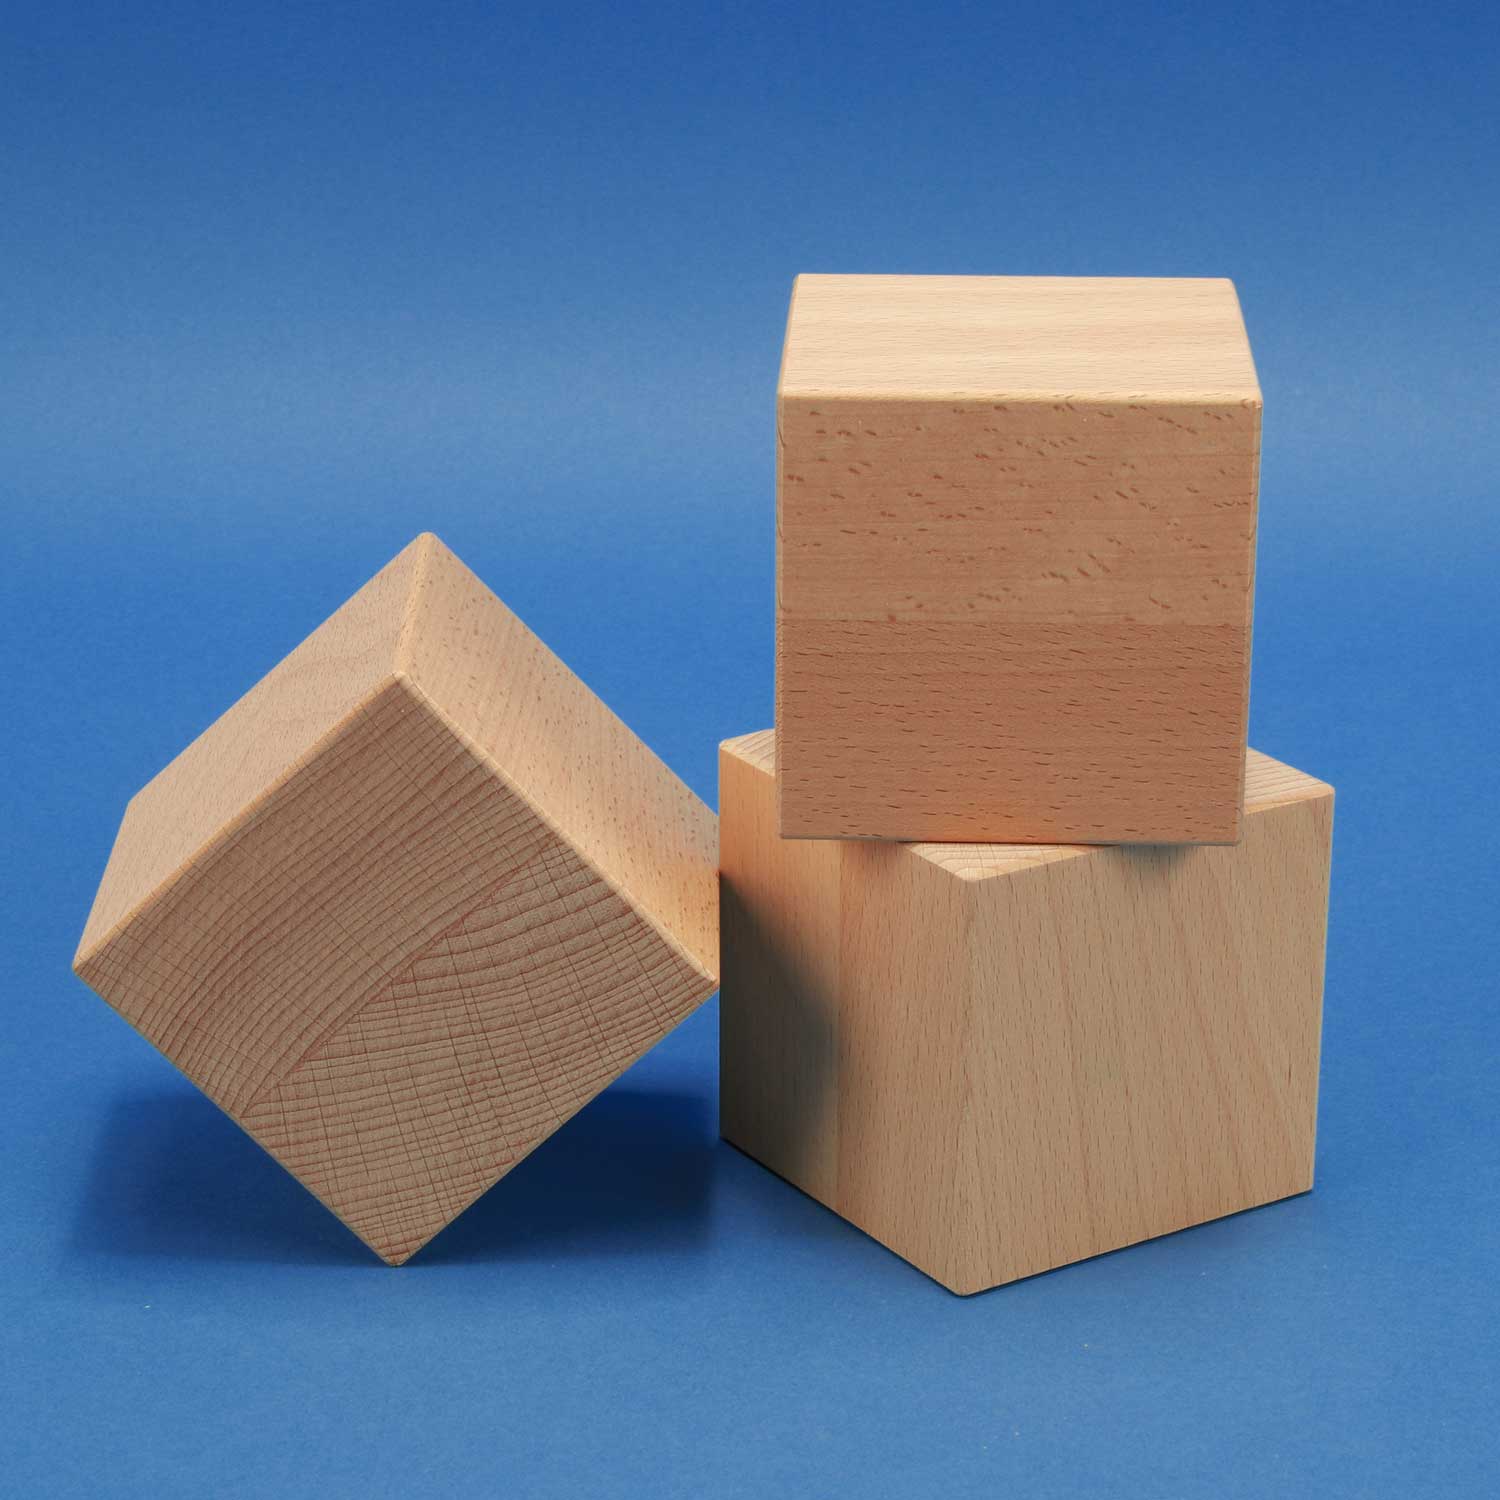 Deco wooden cubes